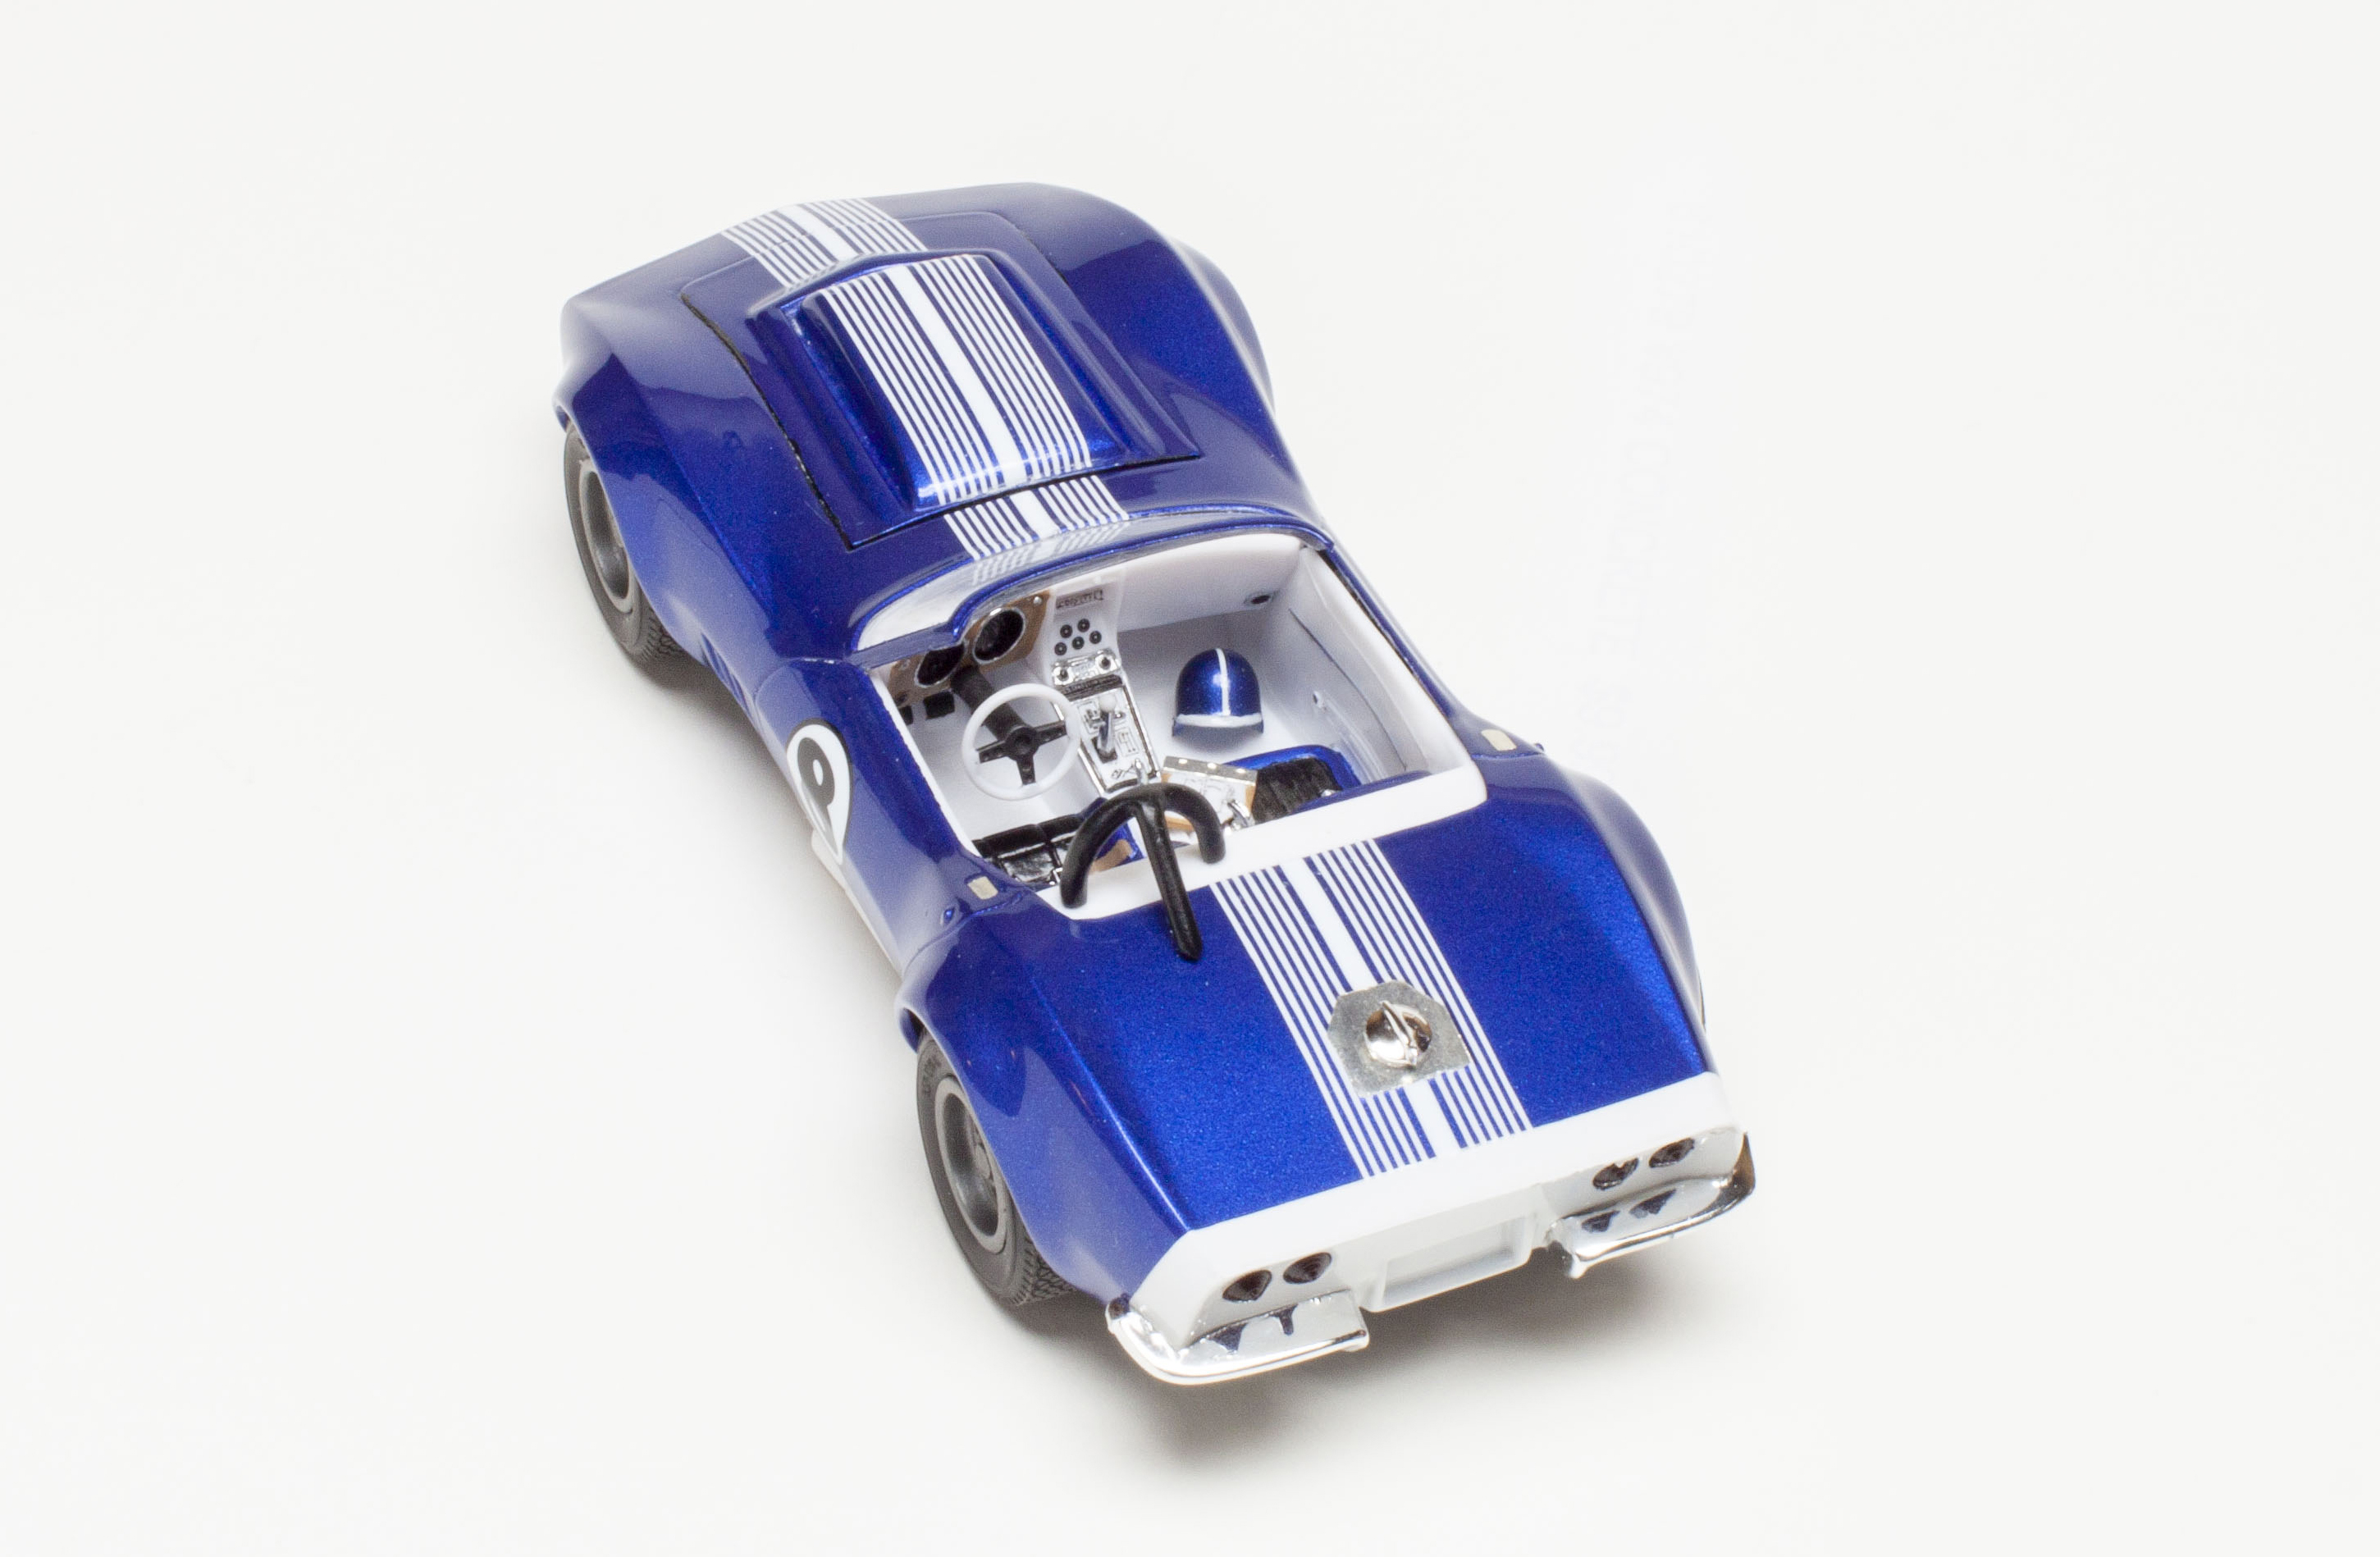 AMT 1/25 scale '68 Corvette plastic model kit review | FineScale